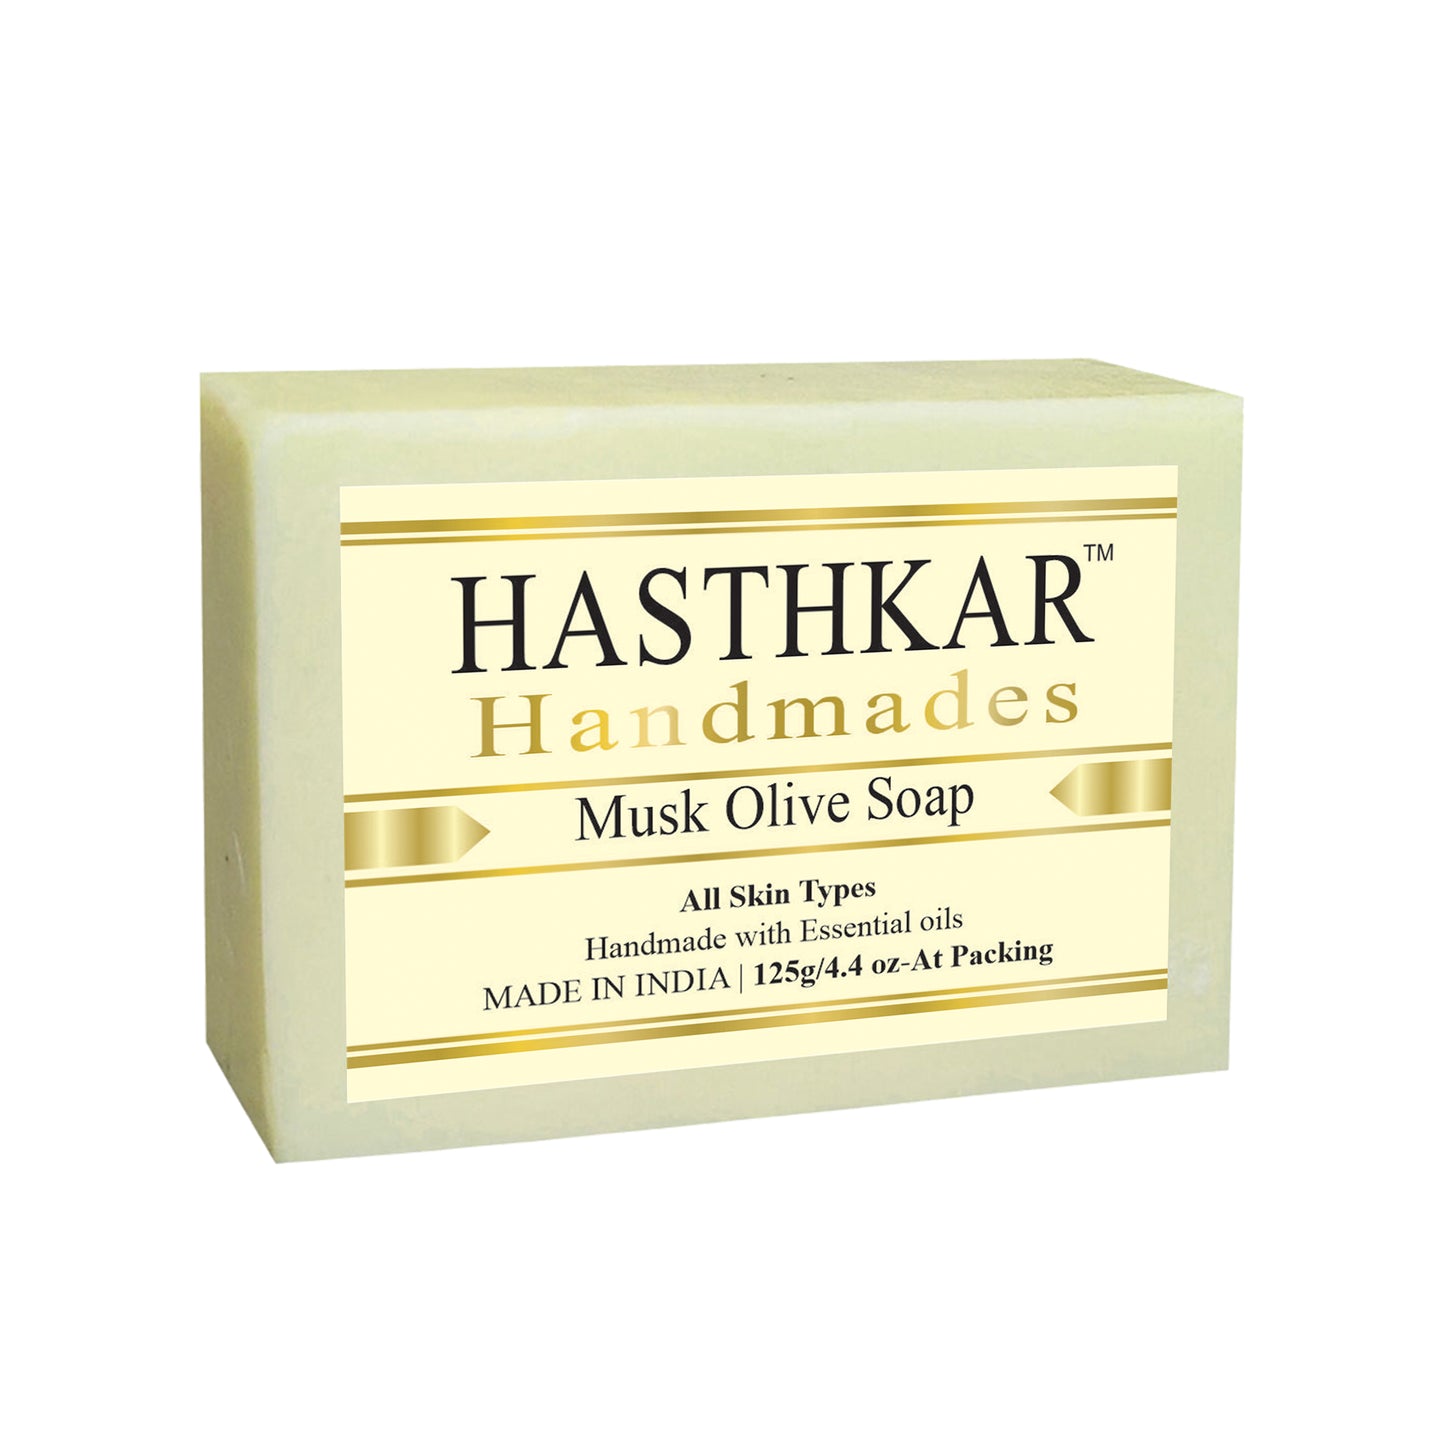 Hasthkar handmades musk oilve bathing soap men women glowing skin 